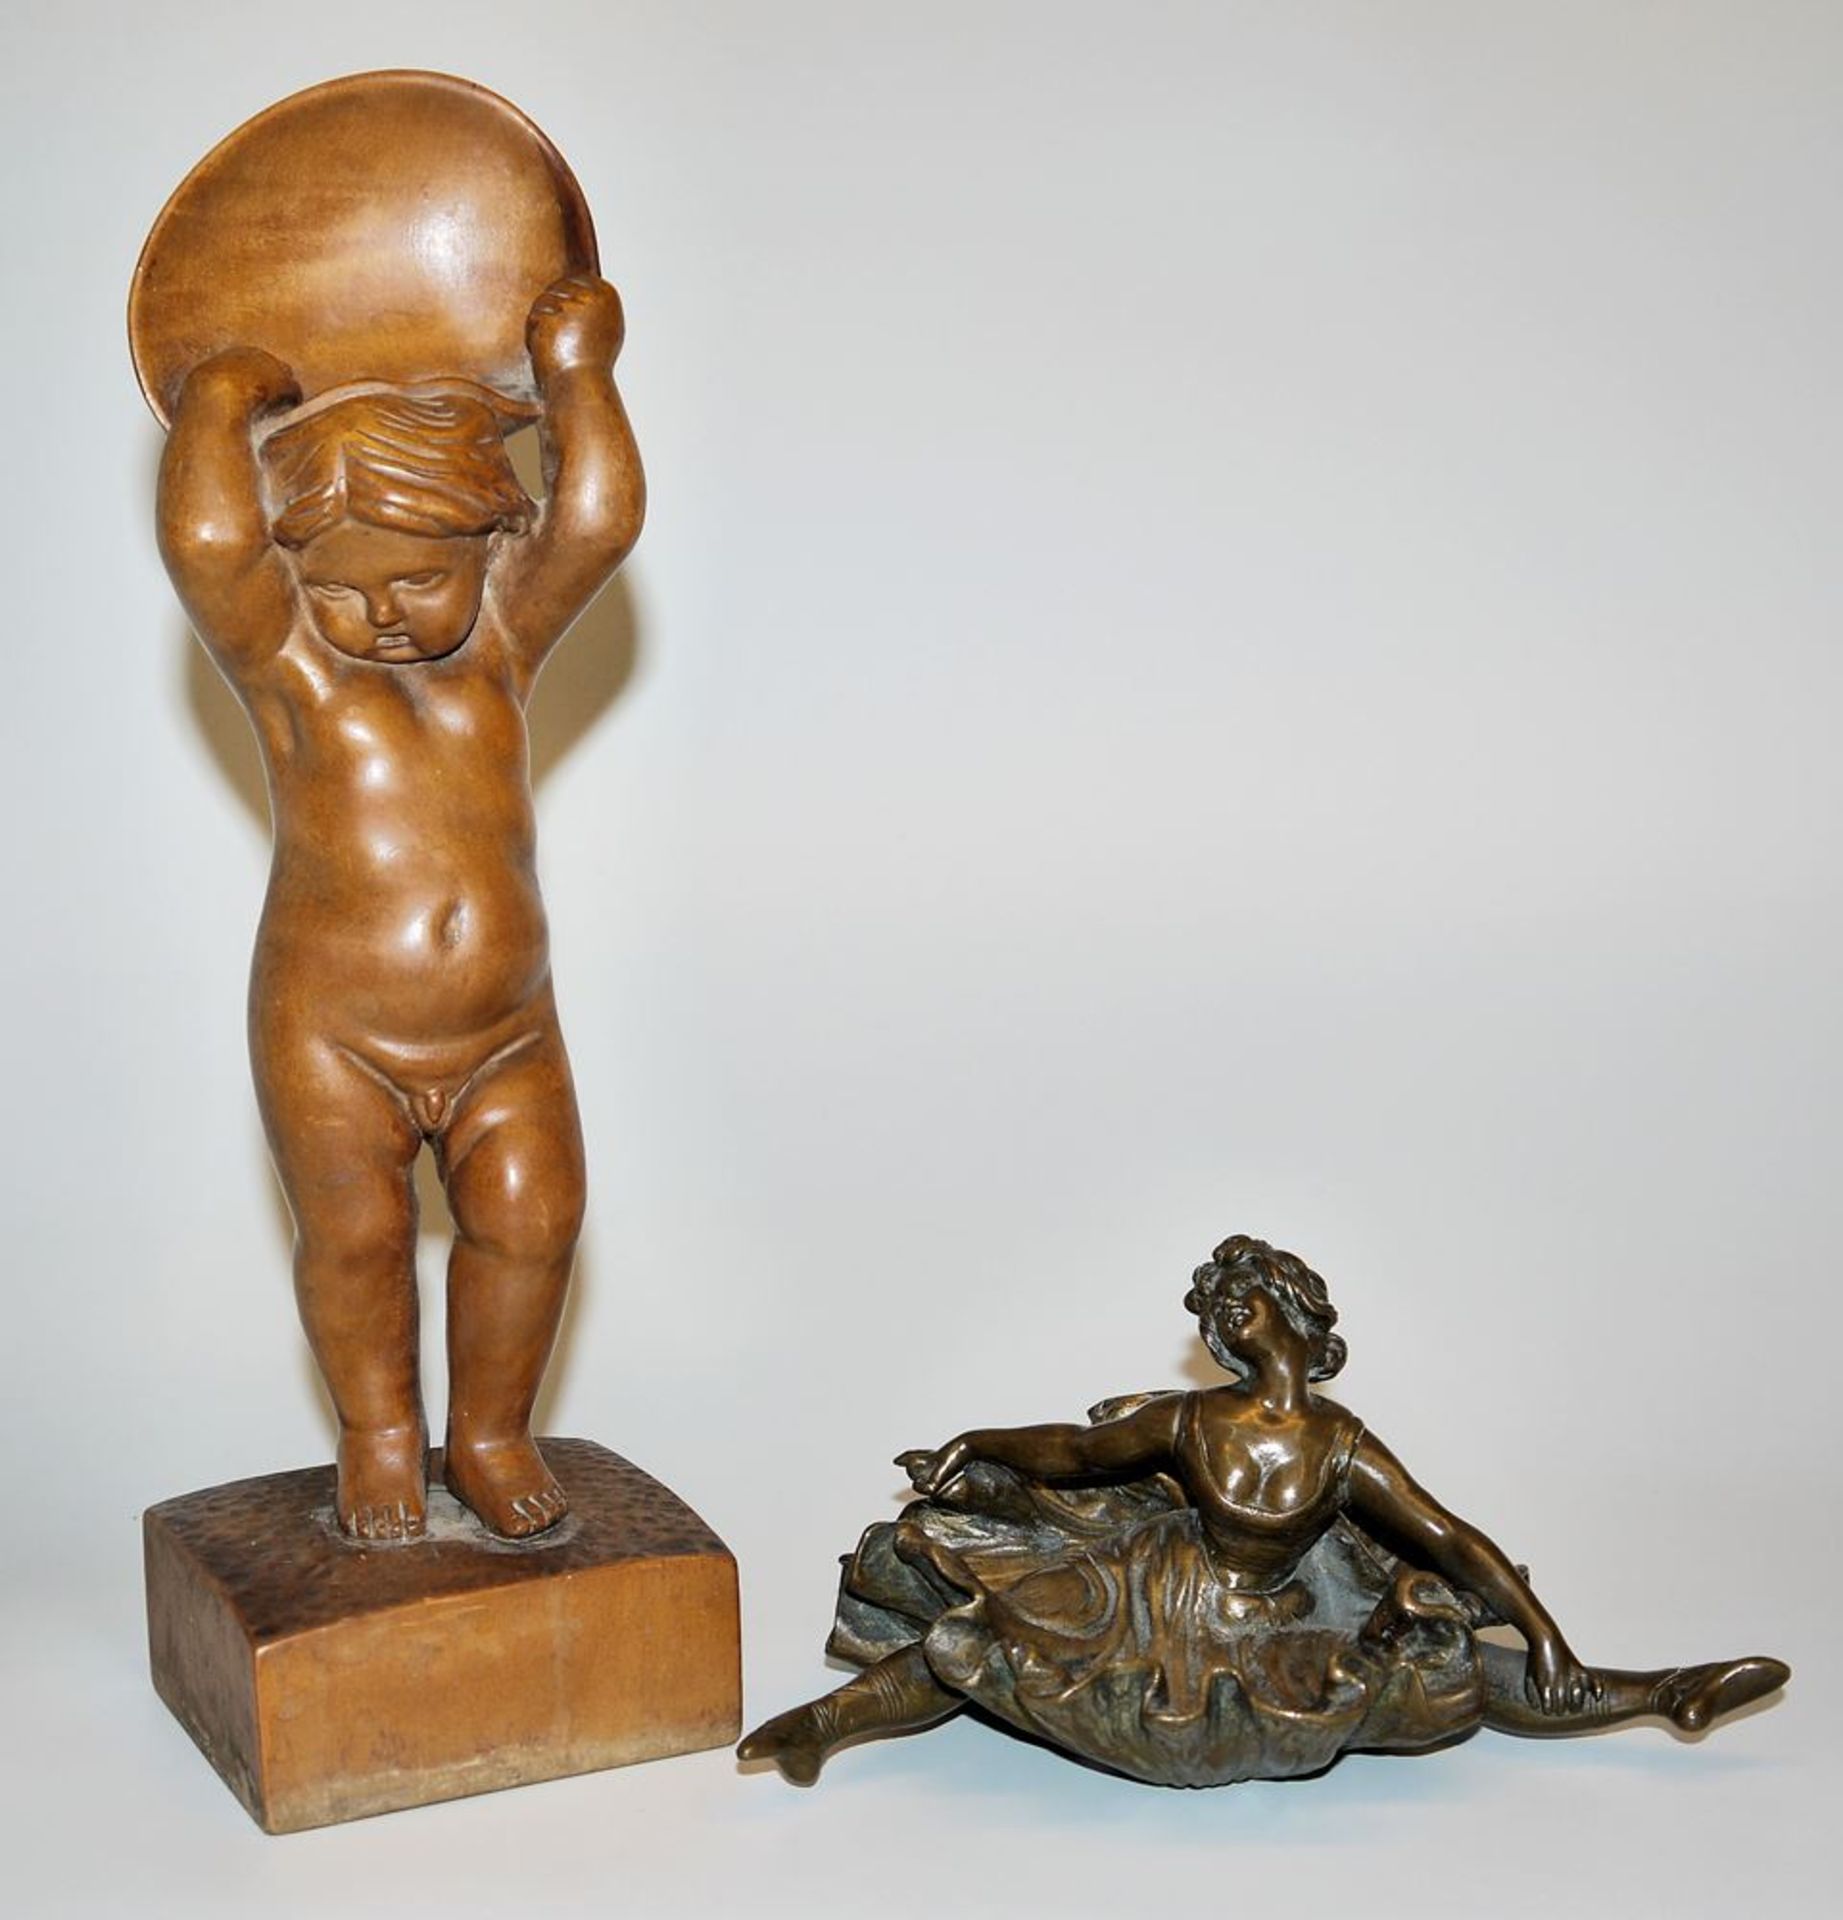 Bronze sculpture balletänzerin of the Art Nouveau around 1900 & Rob. Bornemann, wooden sculpture pu